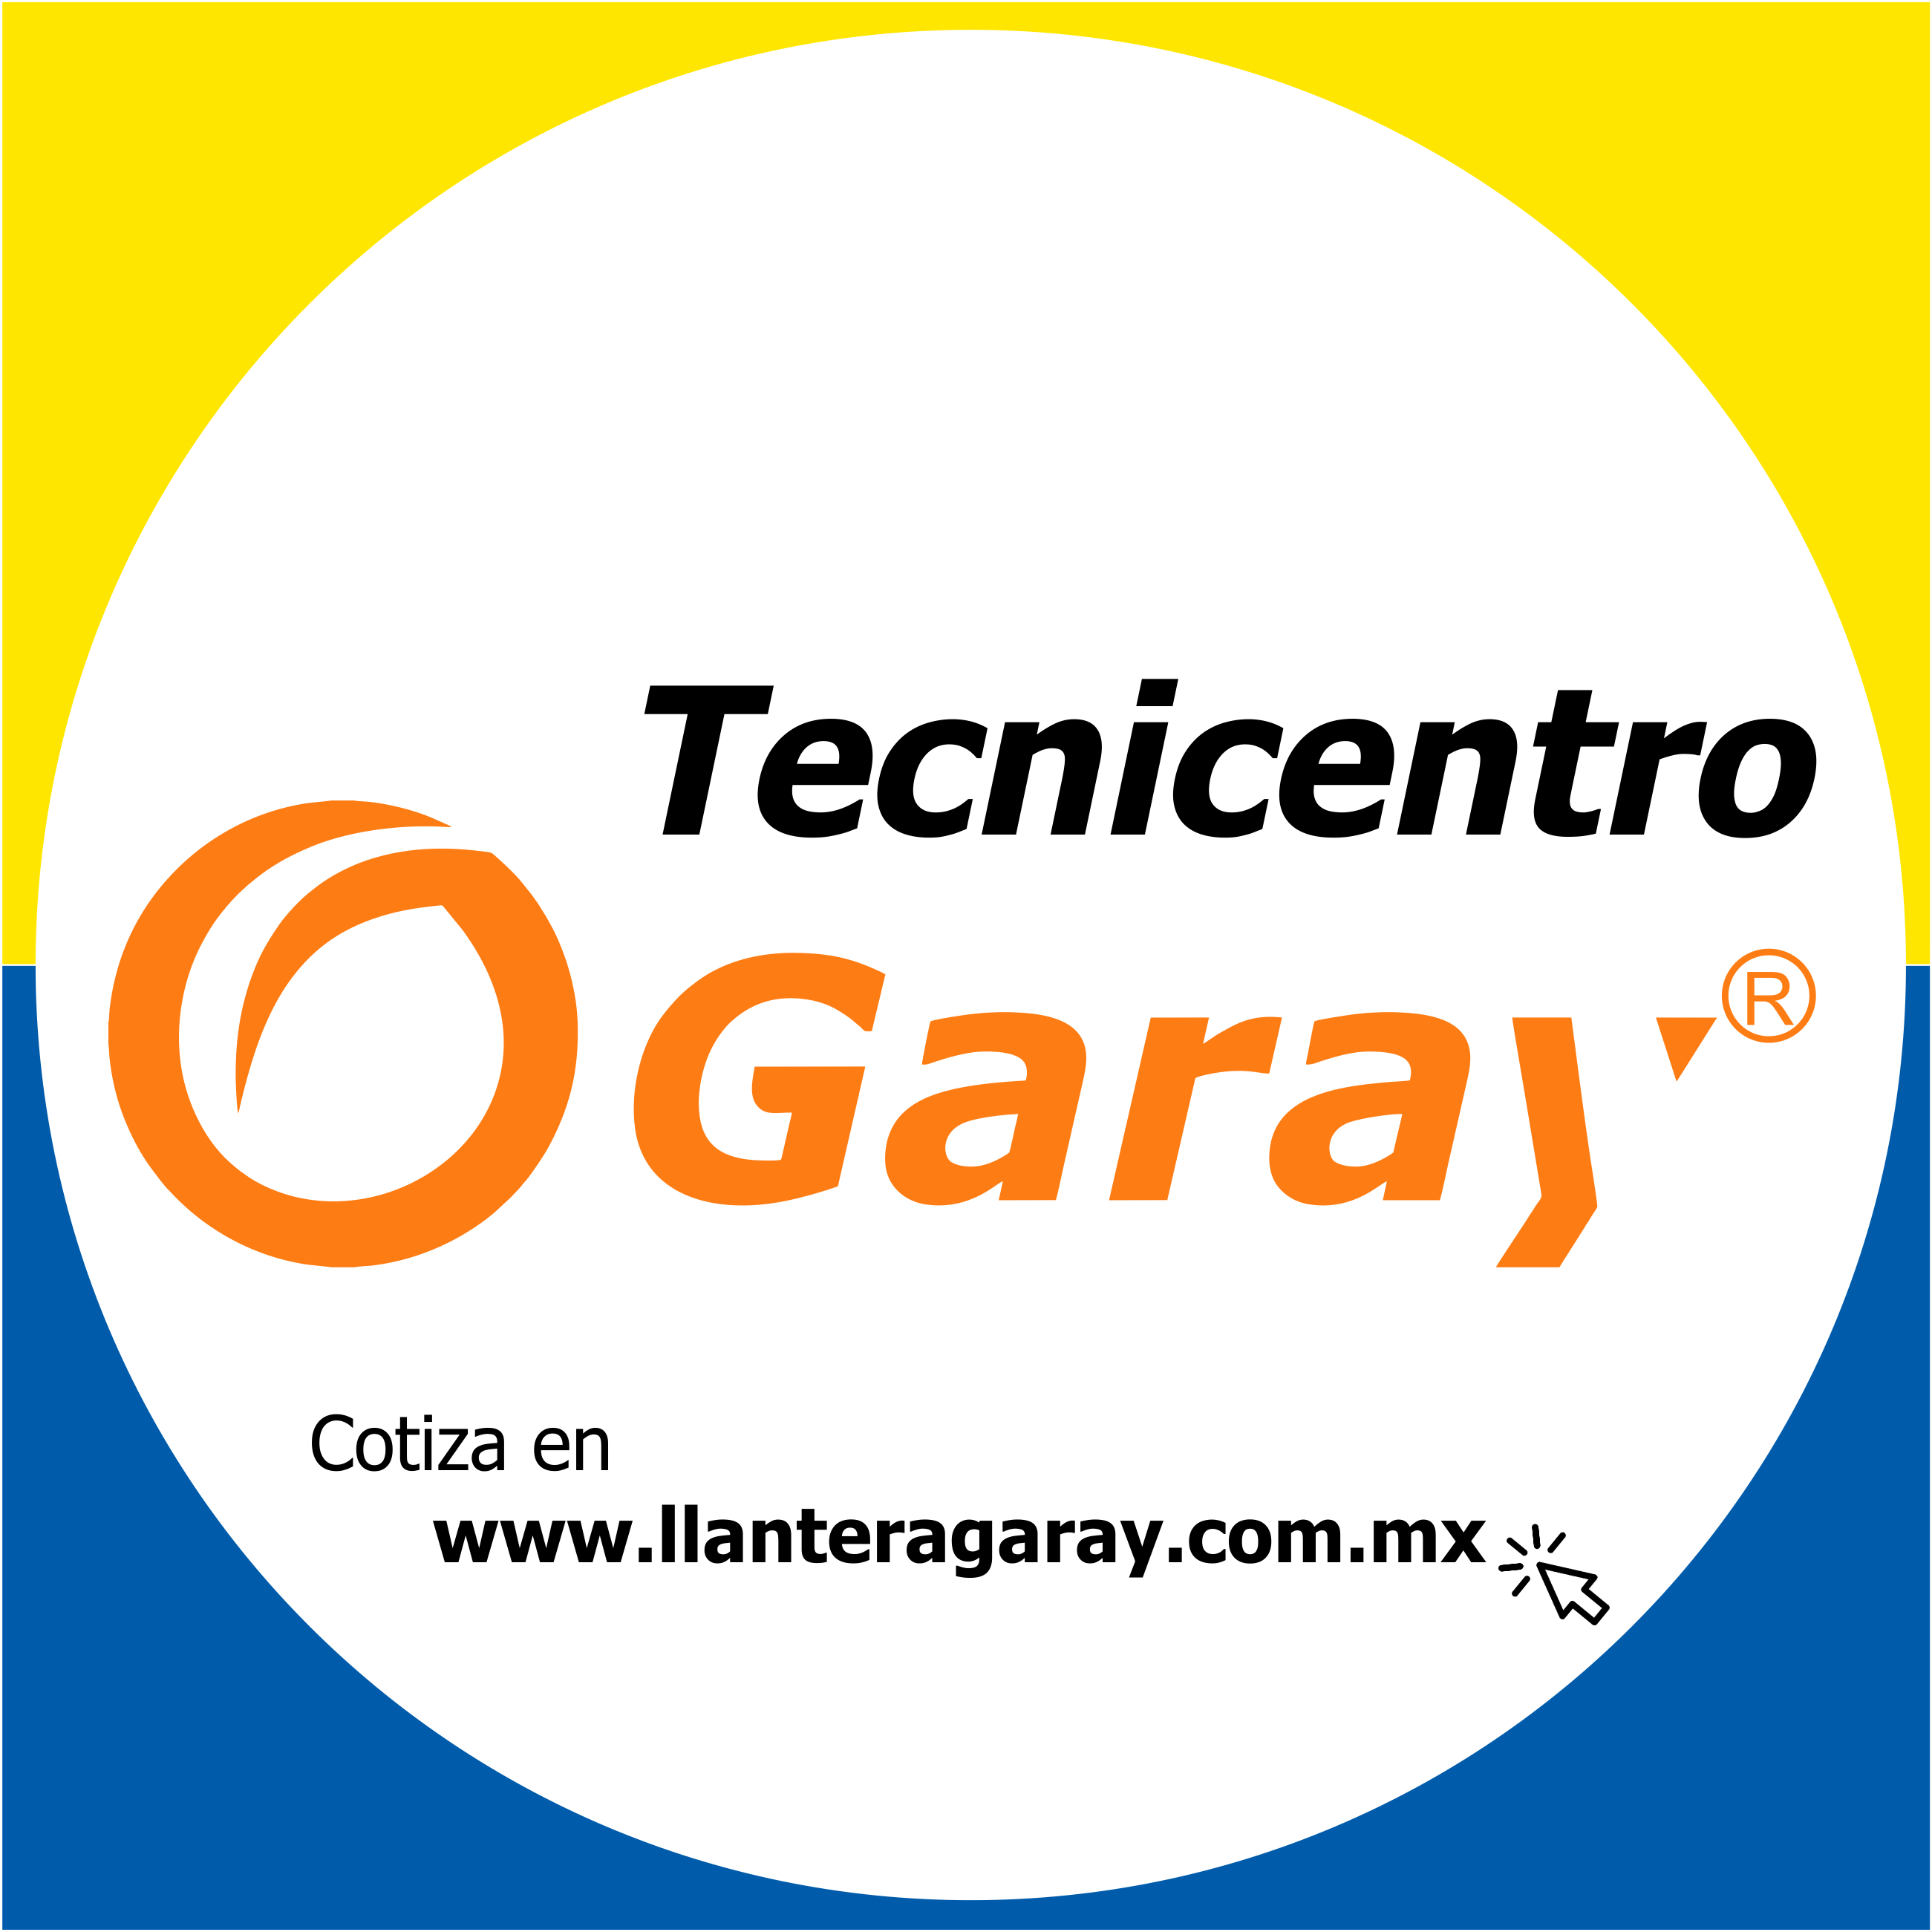 Tecnicentro Garay Orizaba Logo